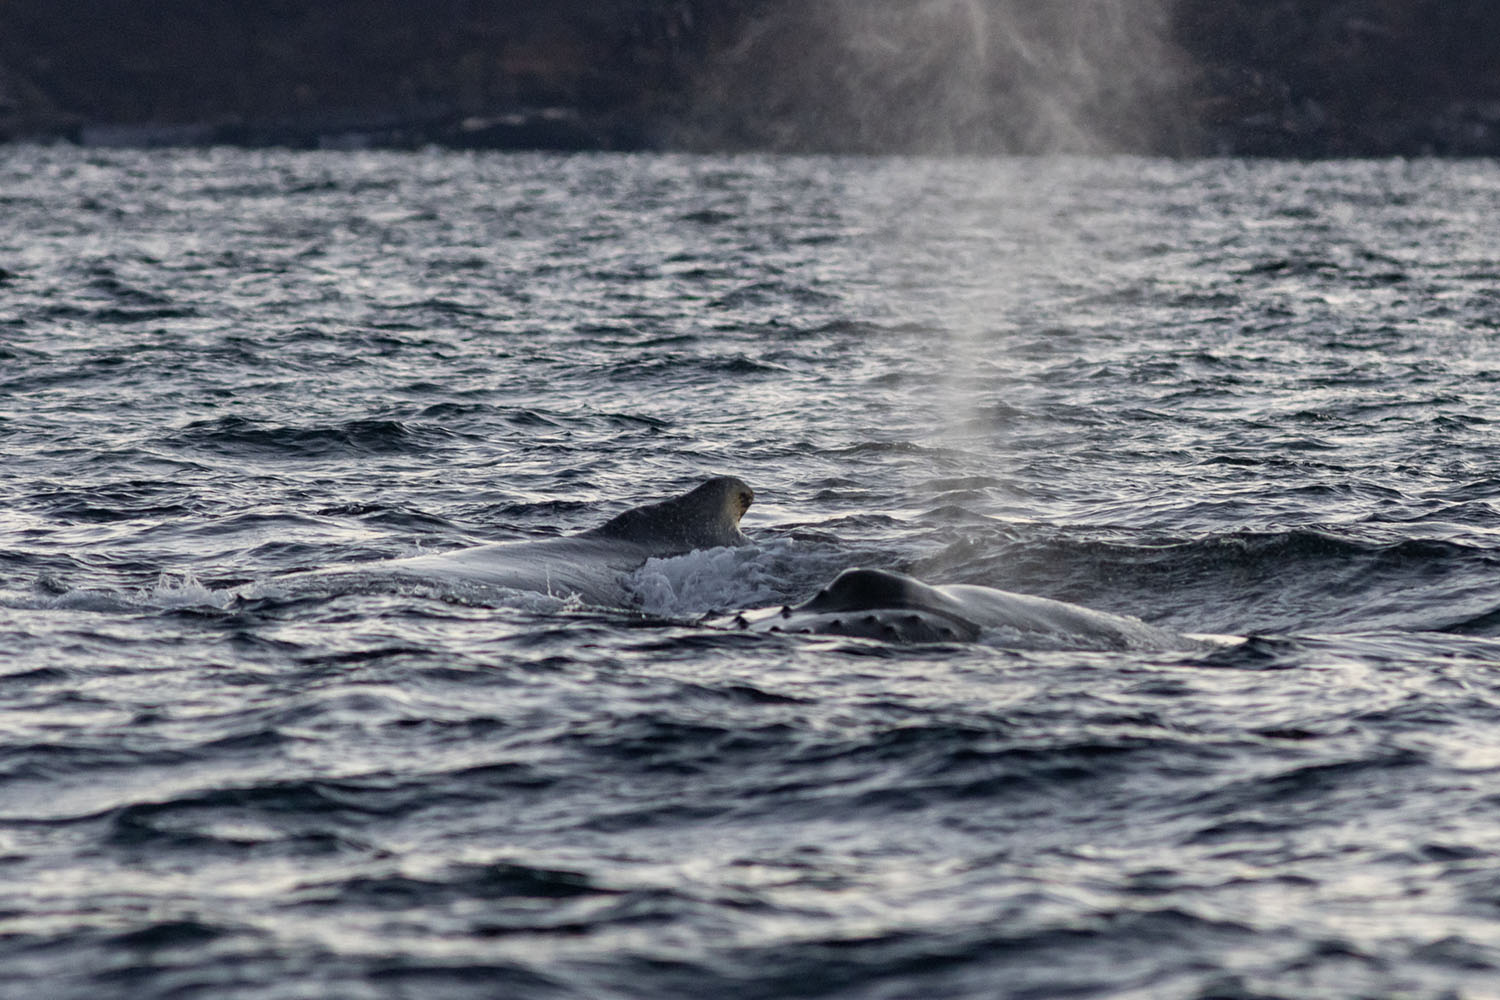 voyage scientifique - orques et baleines a bosse de norvege 44